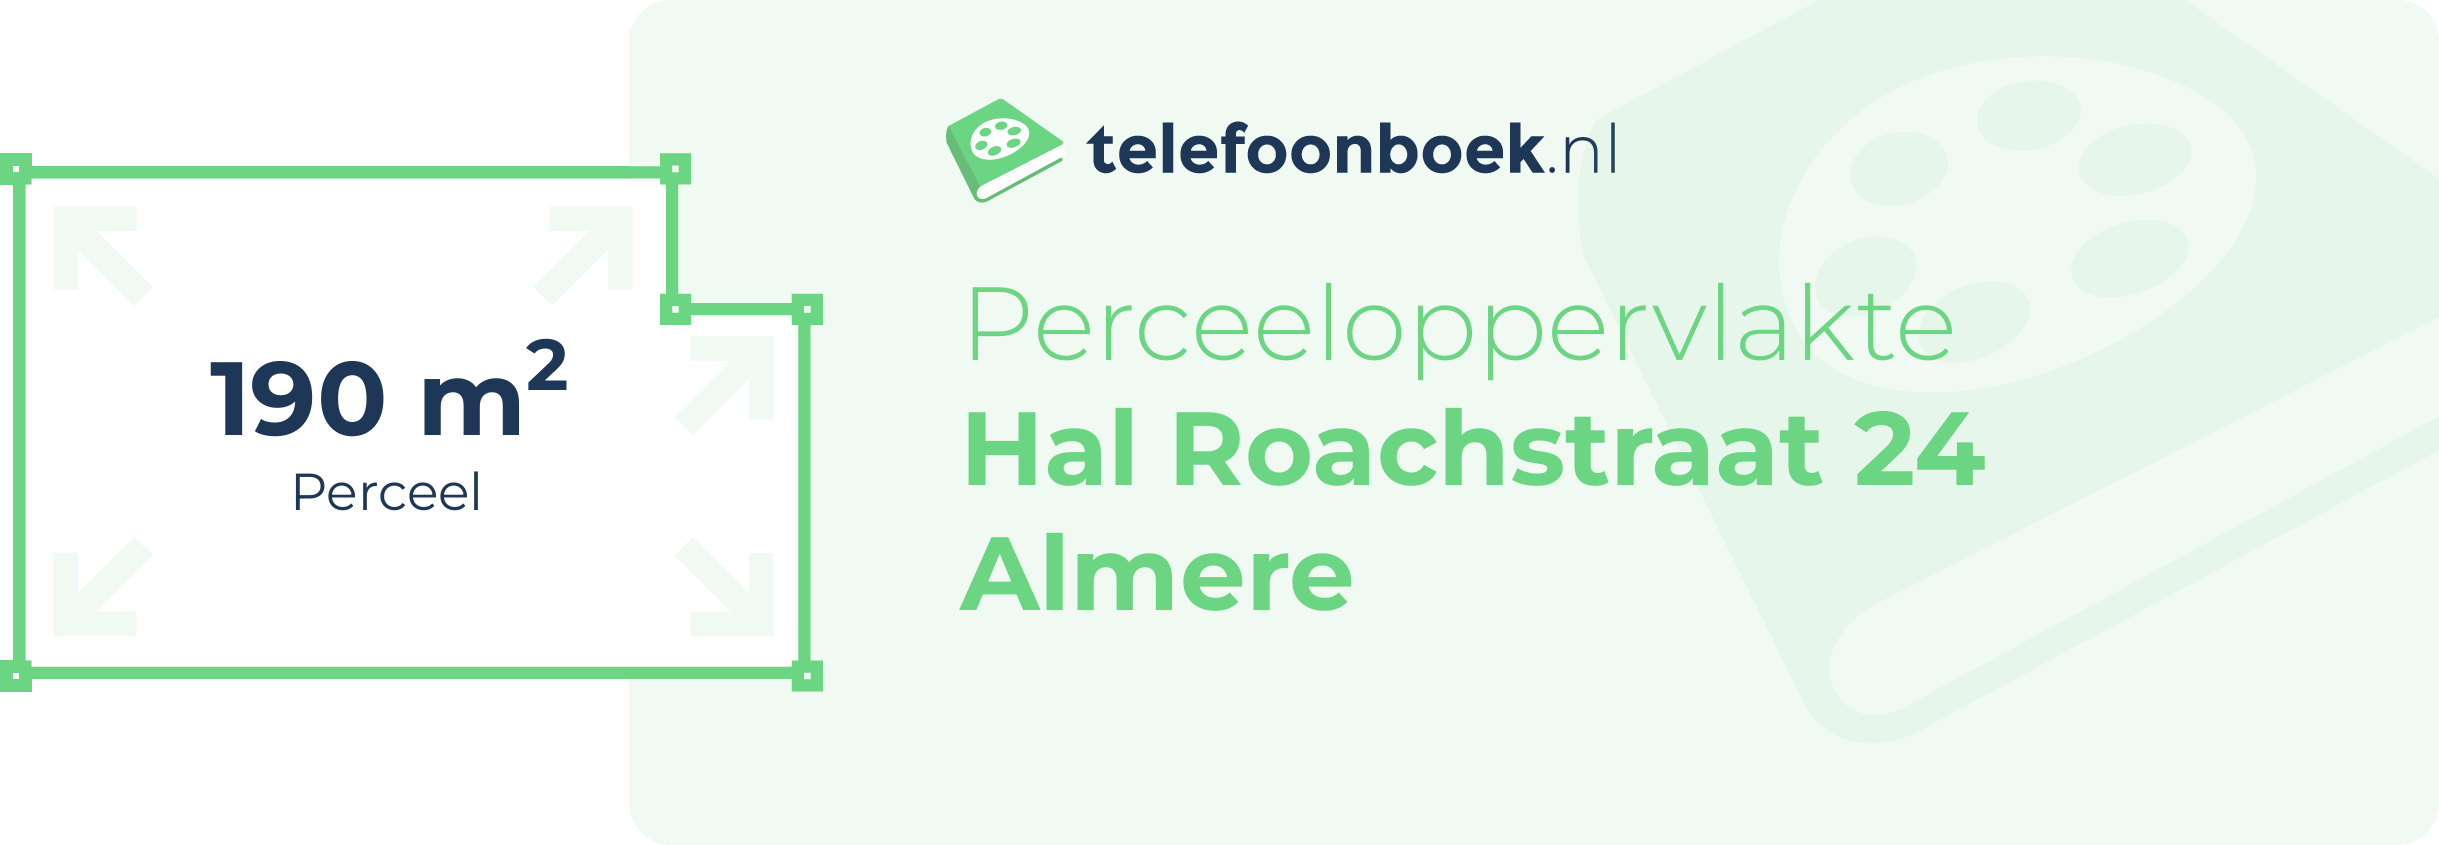 Perceeloppervlakte Hal Roachstraat 24 Almere